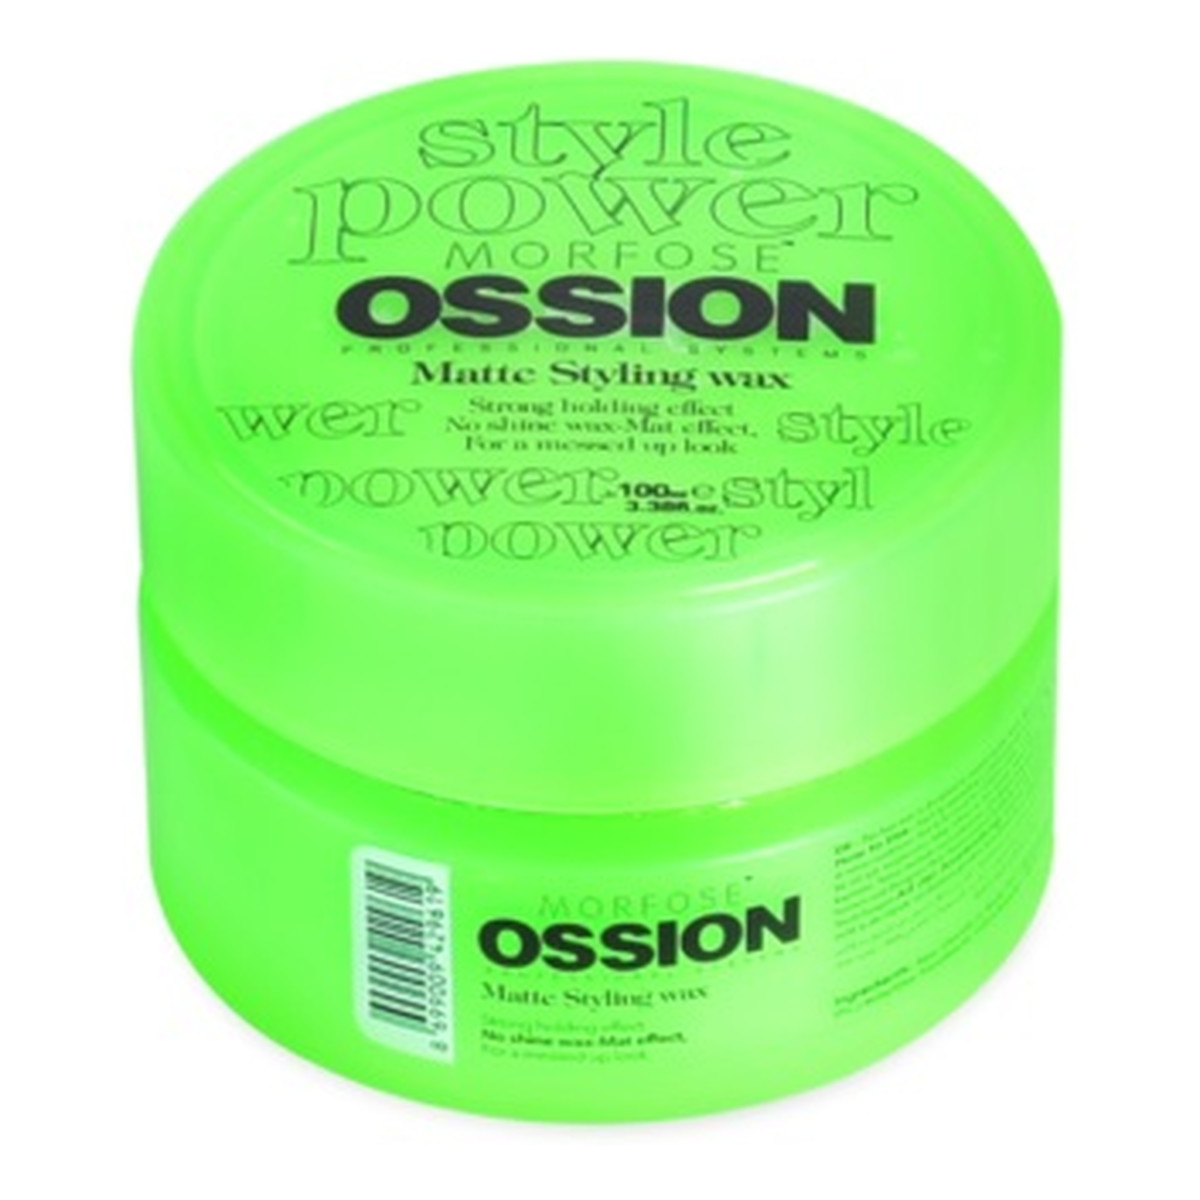 Morfose Ossion matte styling wax matujący wosk do stylizacji włosów 100ml